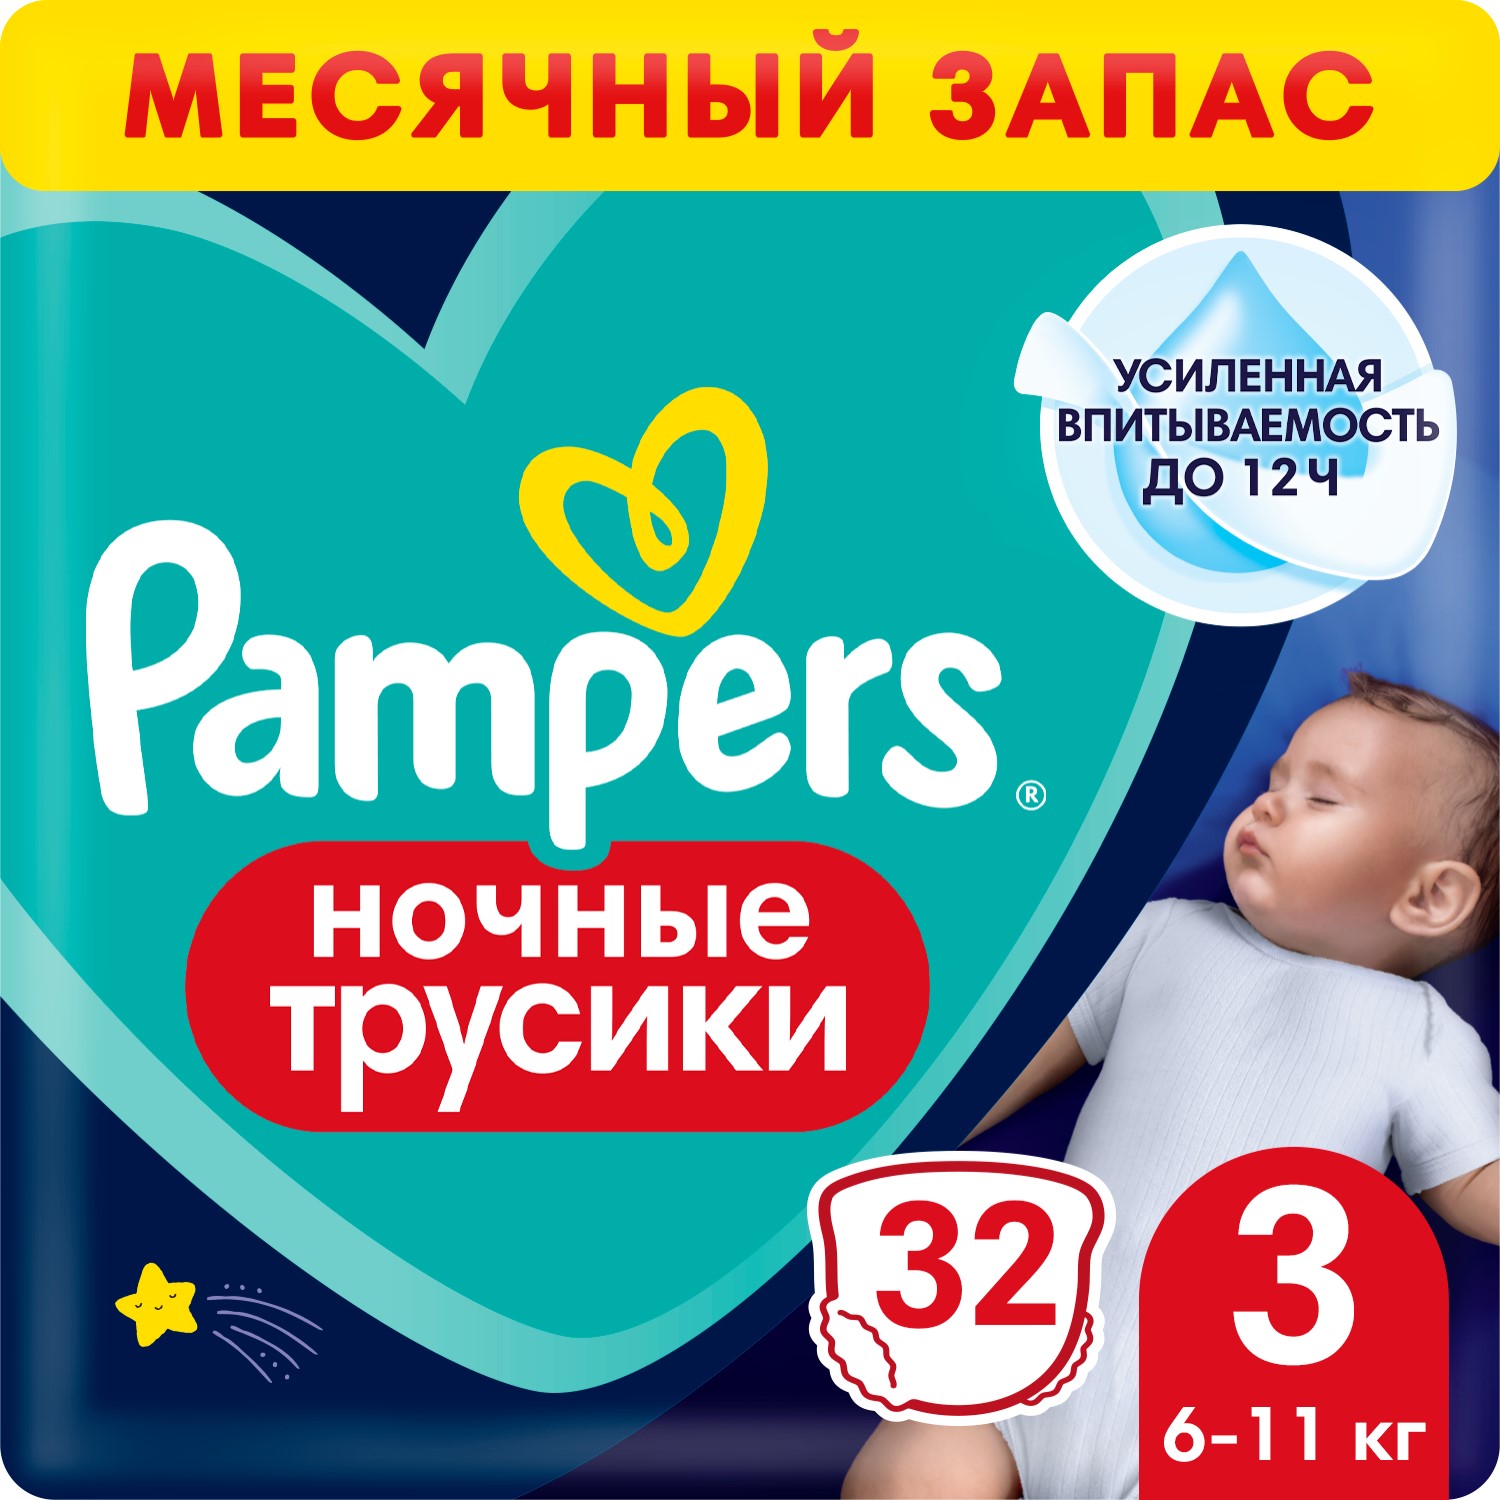 Трусики Pampers Night Pants Размер 3, 32 шт, 6кг - 11кг трусики pampers premium care унисекс р 3 6 11 кг 28 шт